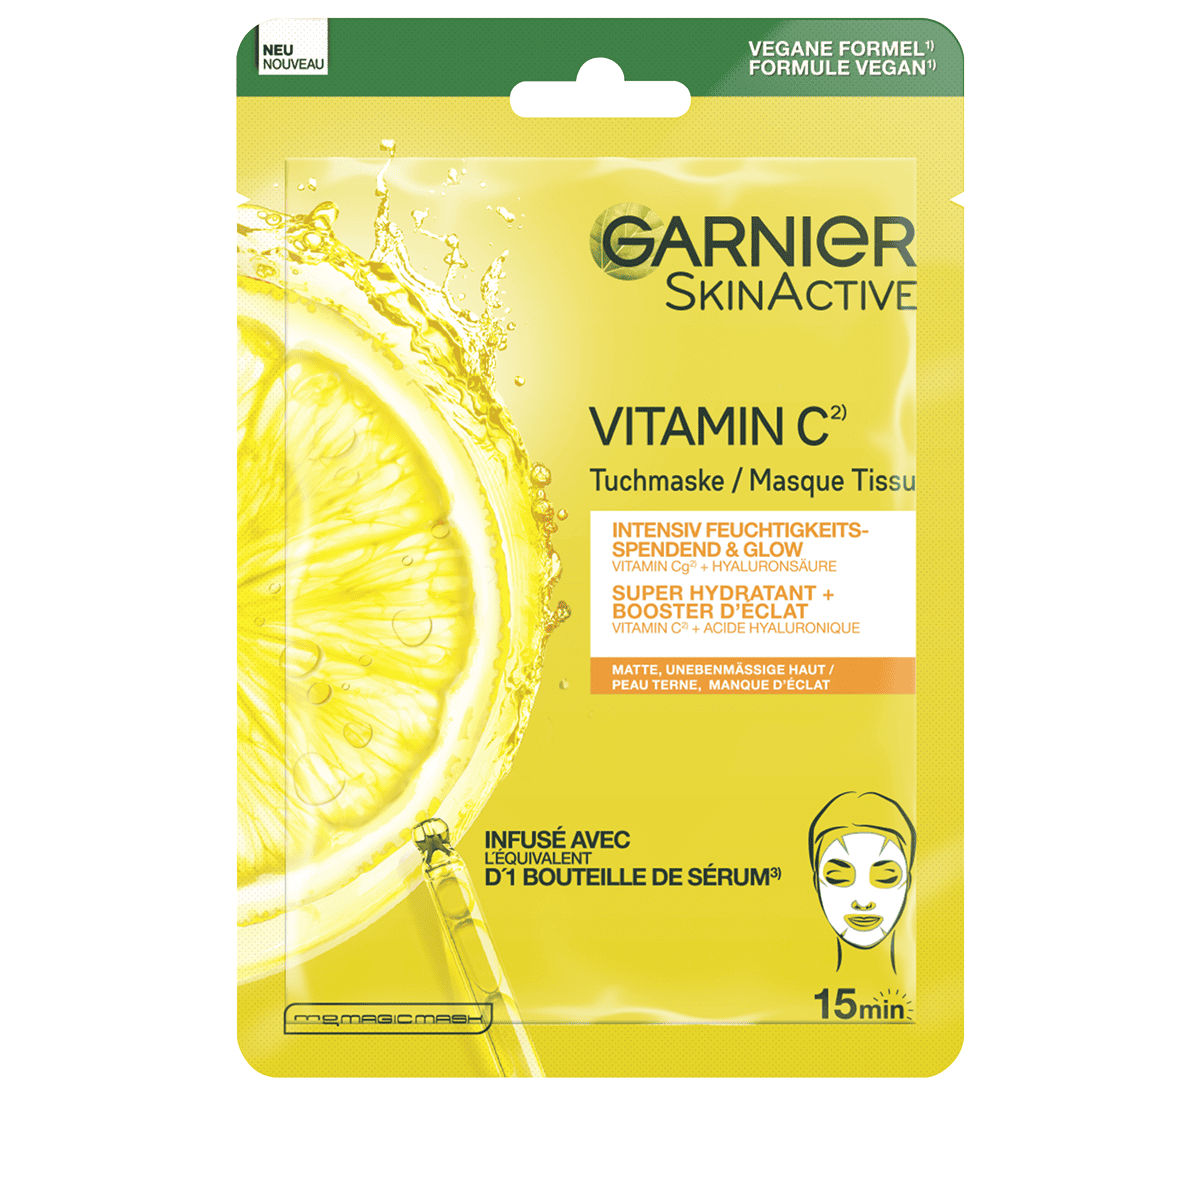 Acquistare Garnier - Set routine anti-imperfezioni alla vitamina C